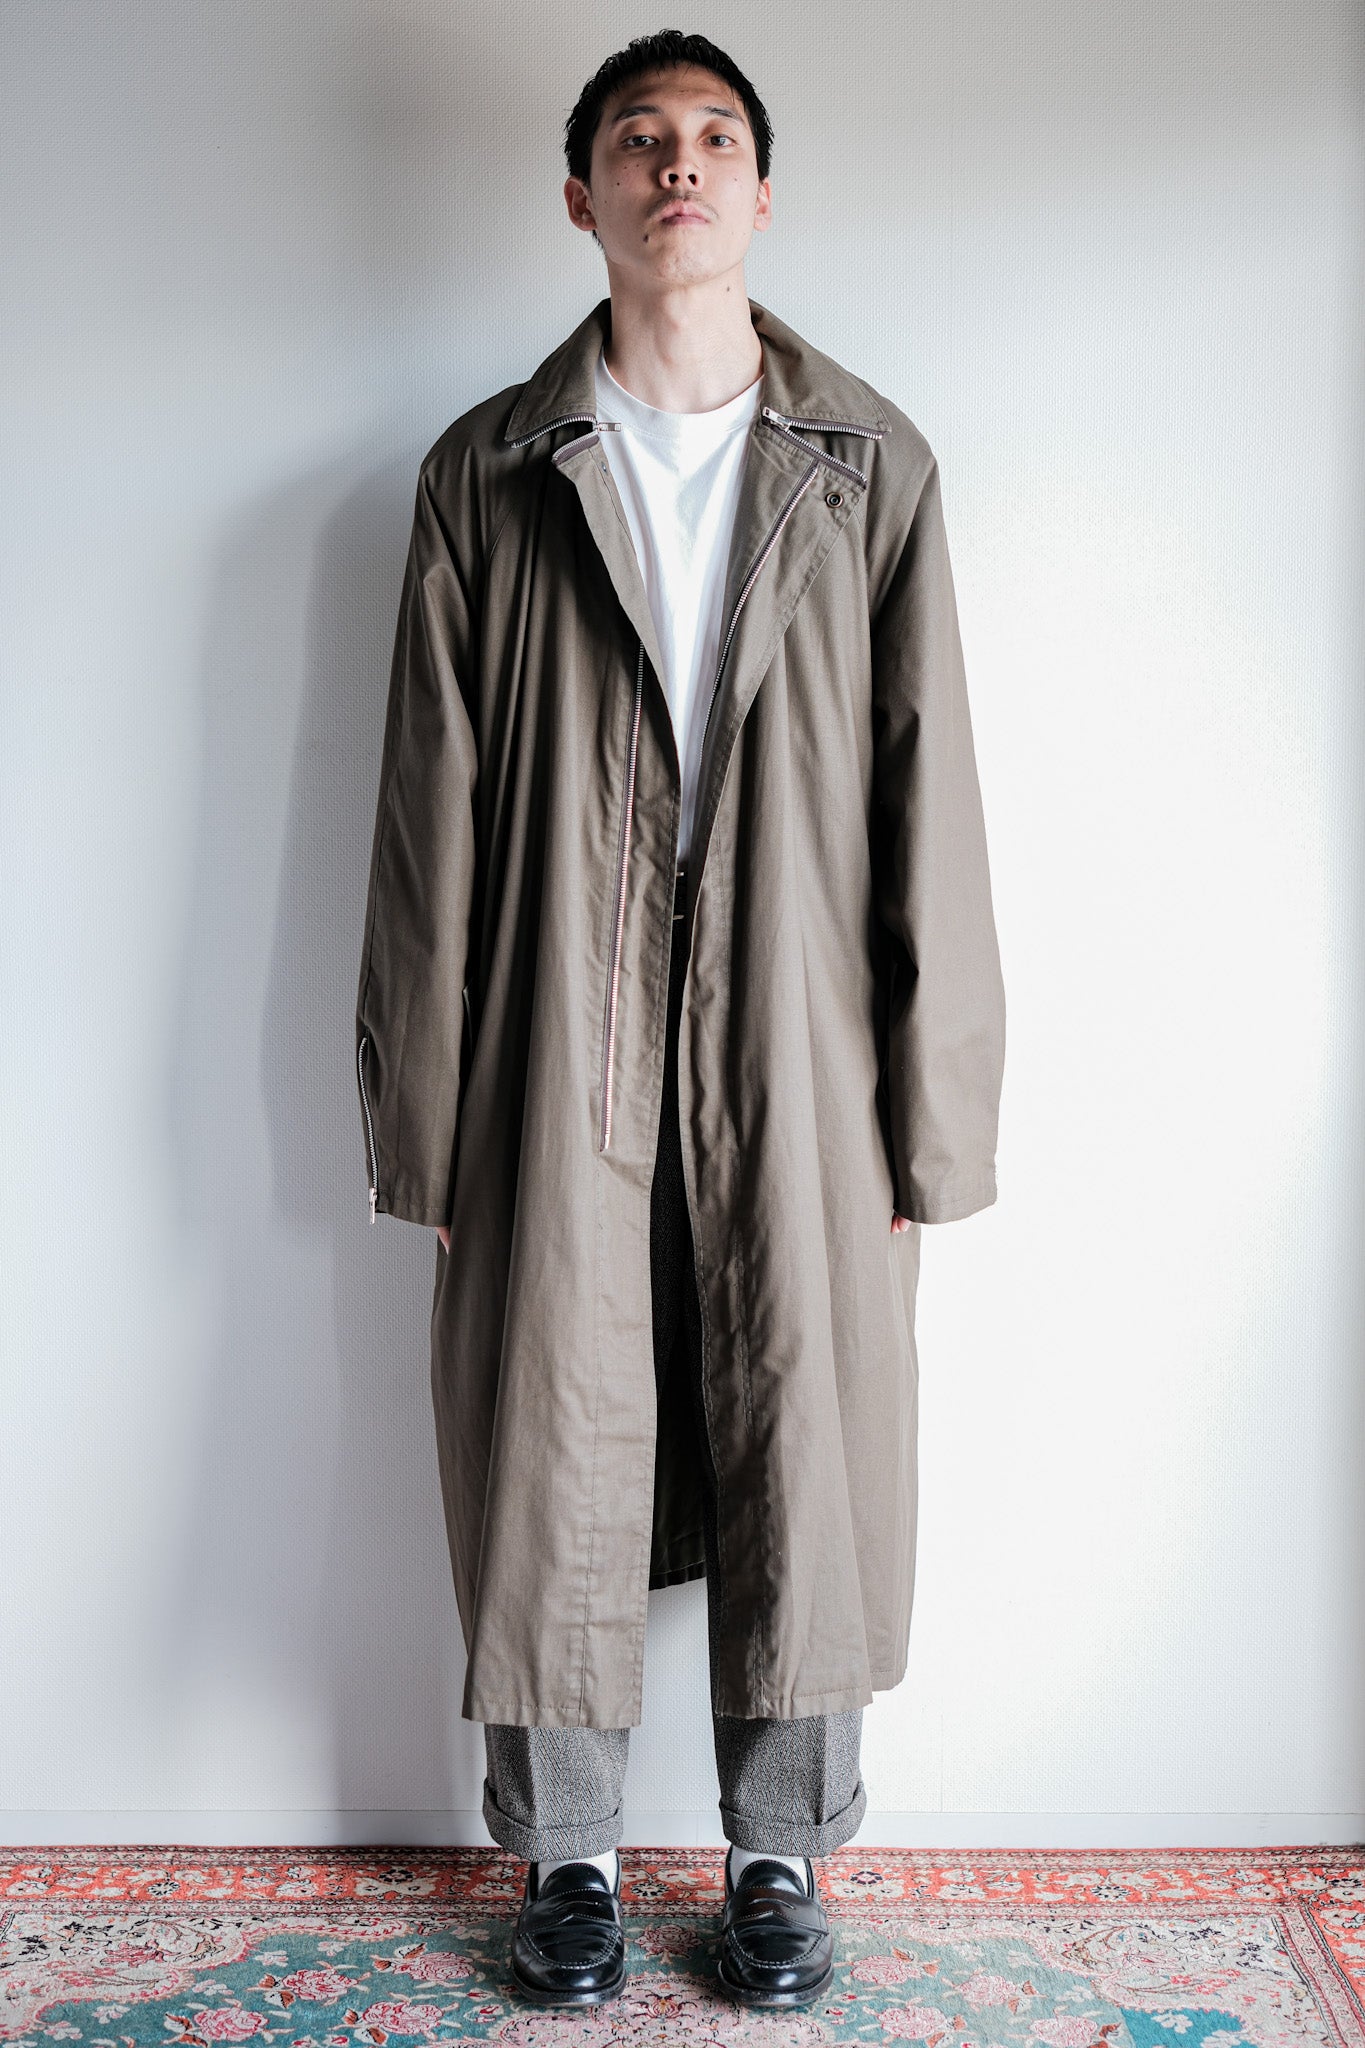 [~ 80's] Old Yves Saint Laurent Raglan M manteau avec une doublure.